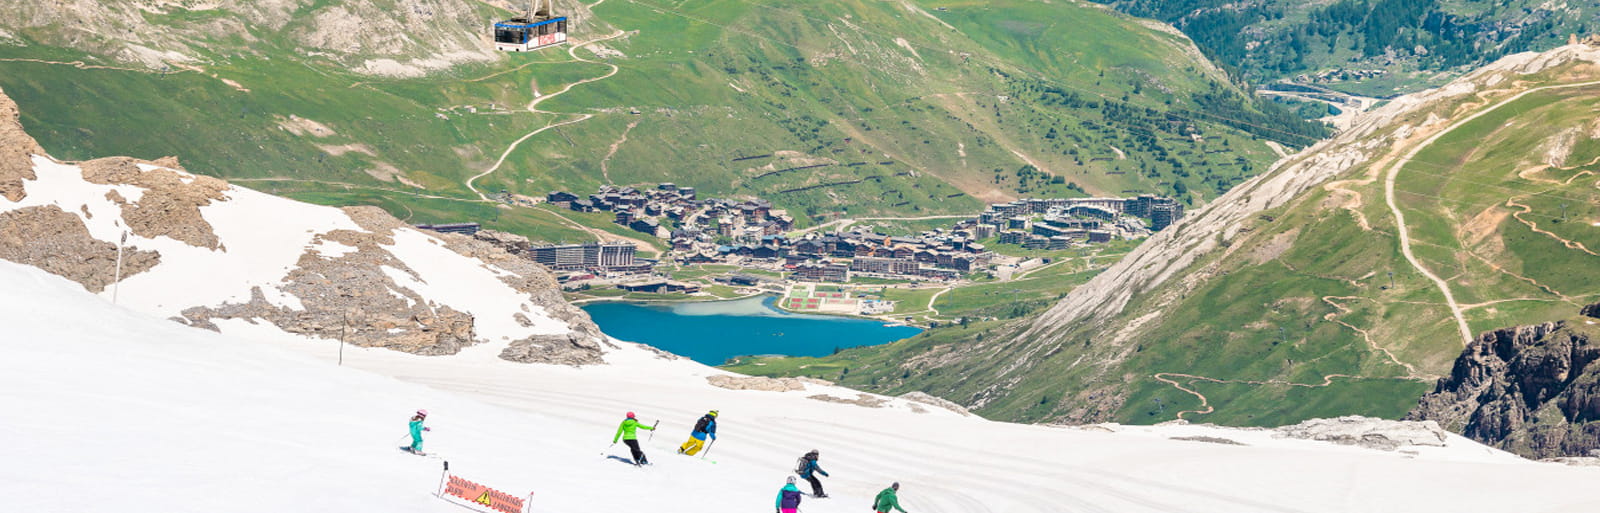 Этим летом можно кататься на лыжах на высоте 3000 м под солнцем Тинь.